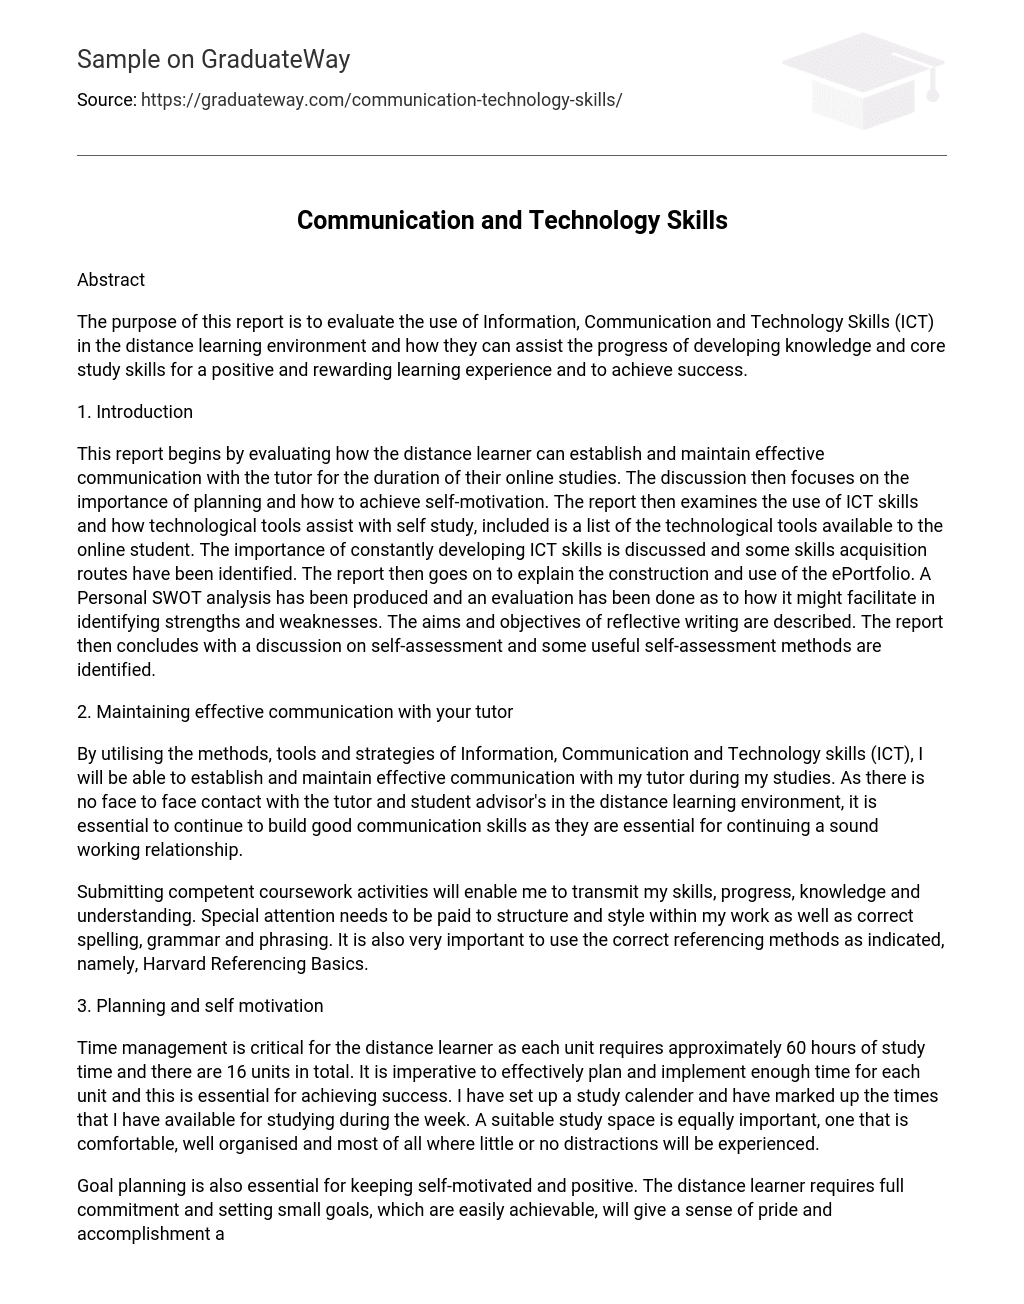 Communication and Technology Skills Analysis